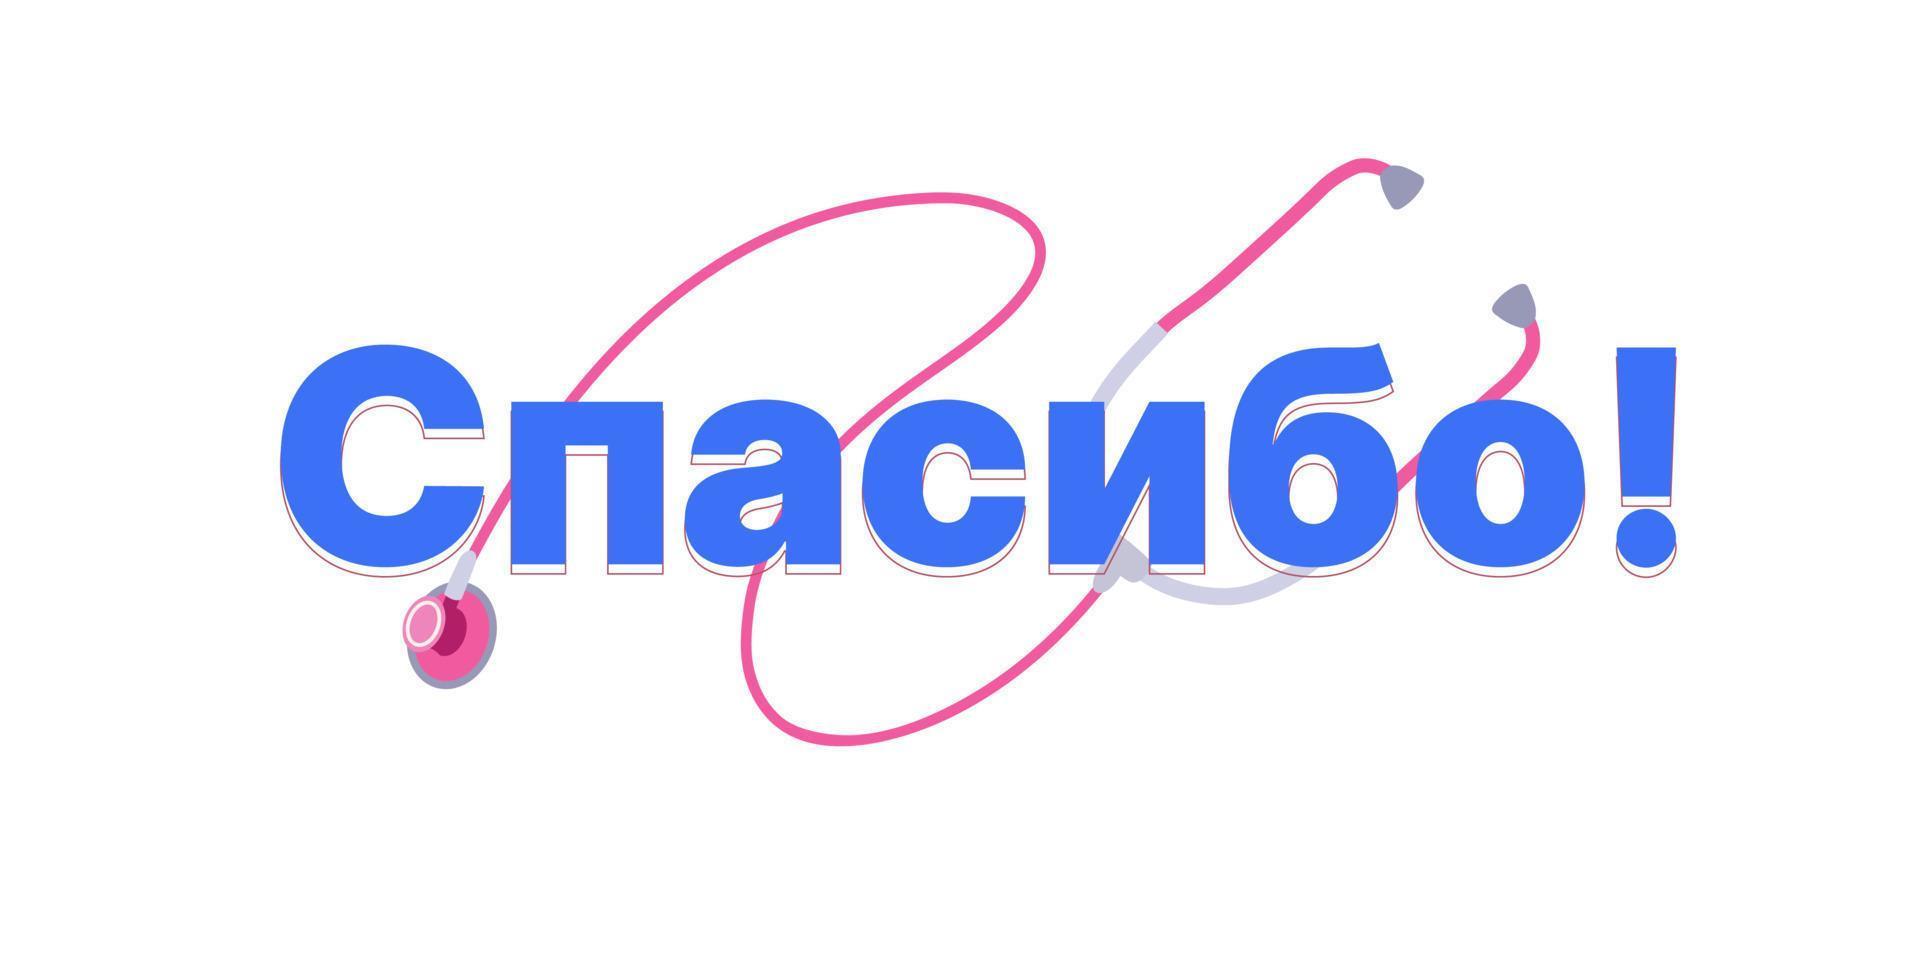 vector bedankt - Russisch woord